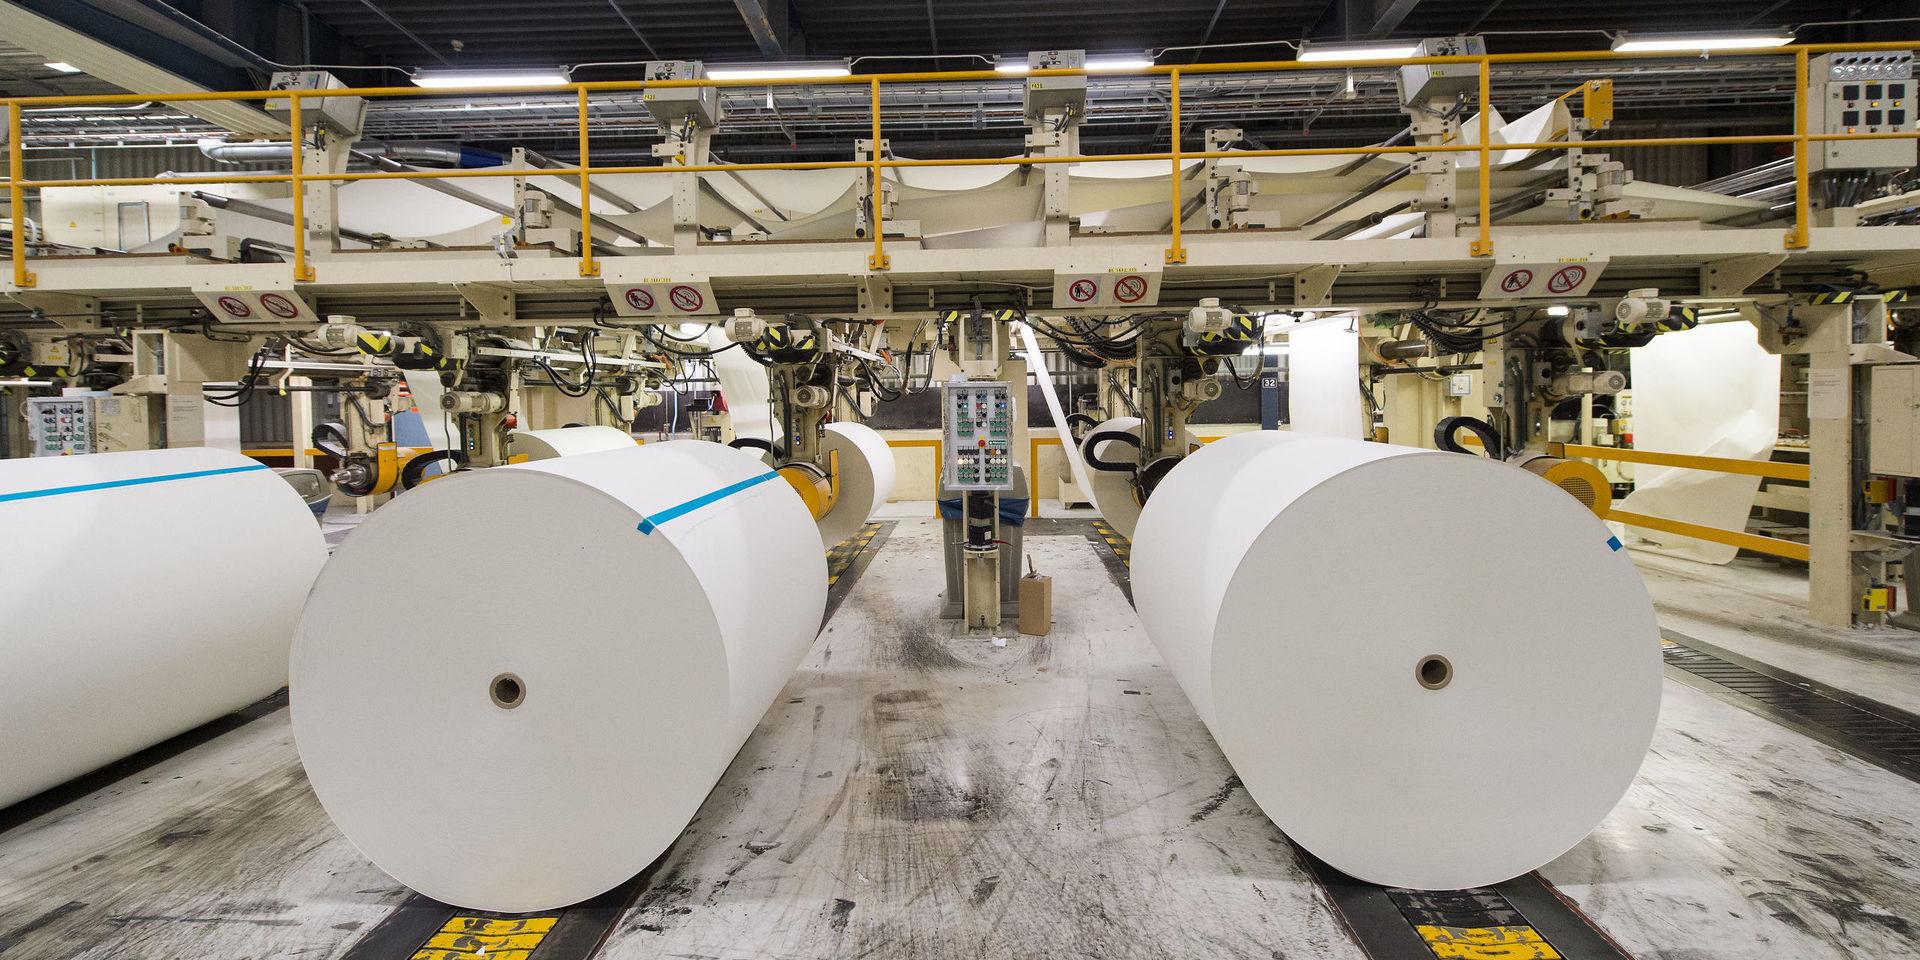 Arctic Paper tillverkar grafiskt finpapper av hög kvalité som exporteras till länder i Europa.